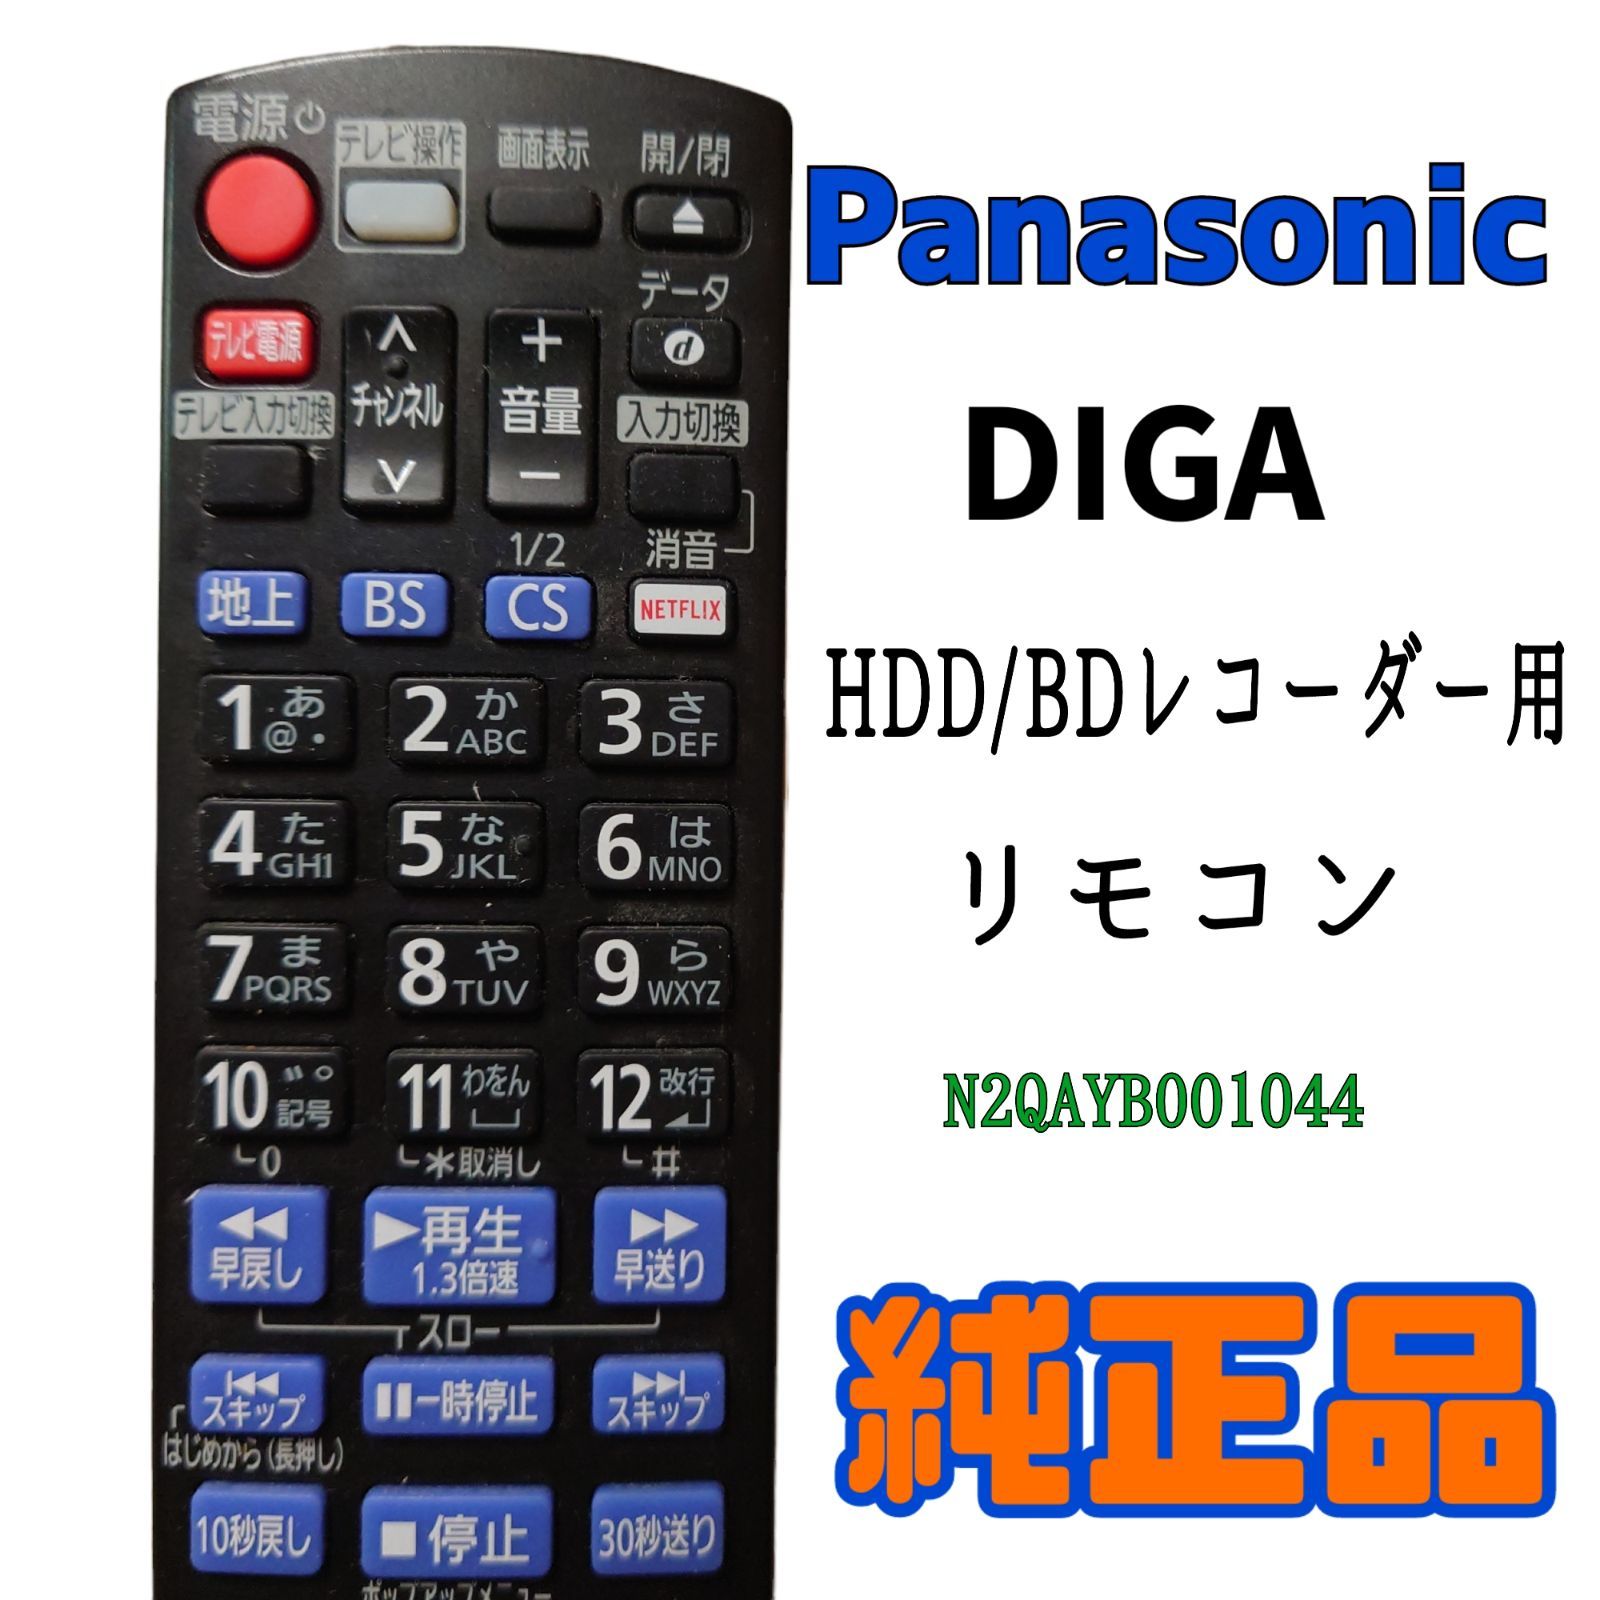 美品】Panasonic BDレコーダーリモコンN2QBYB000021-